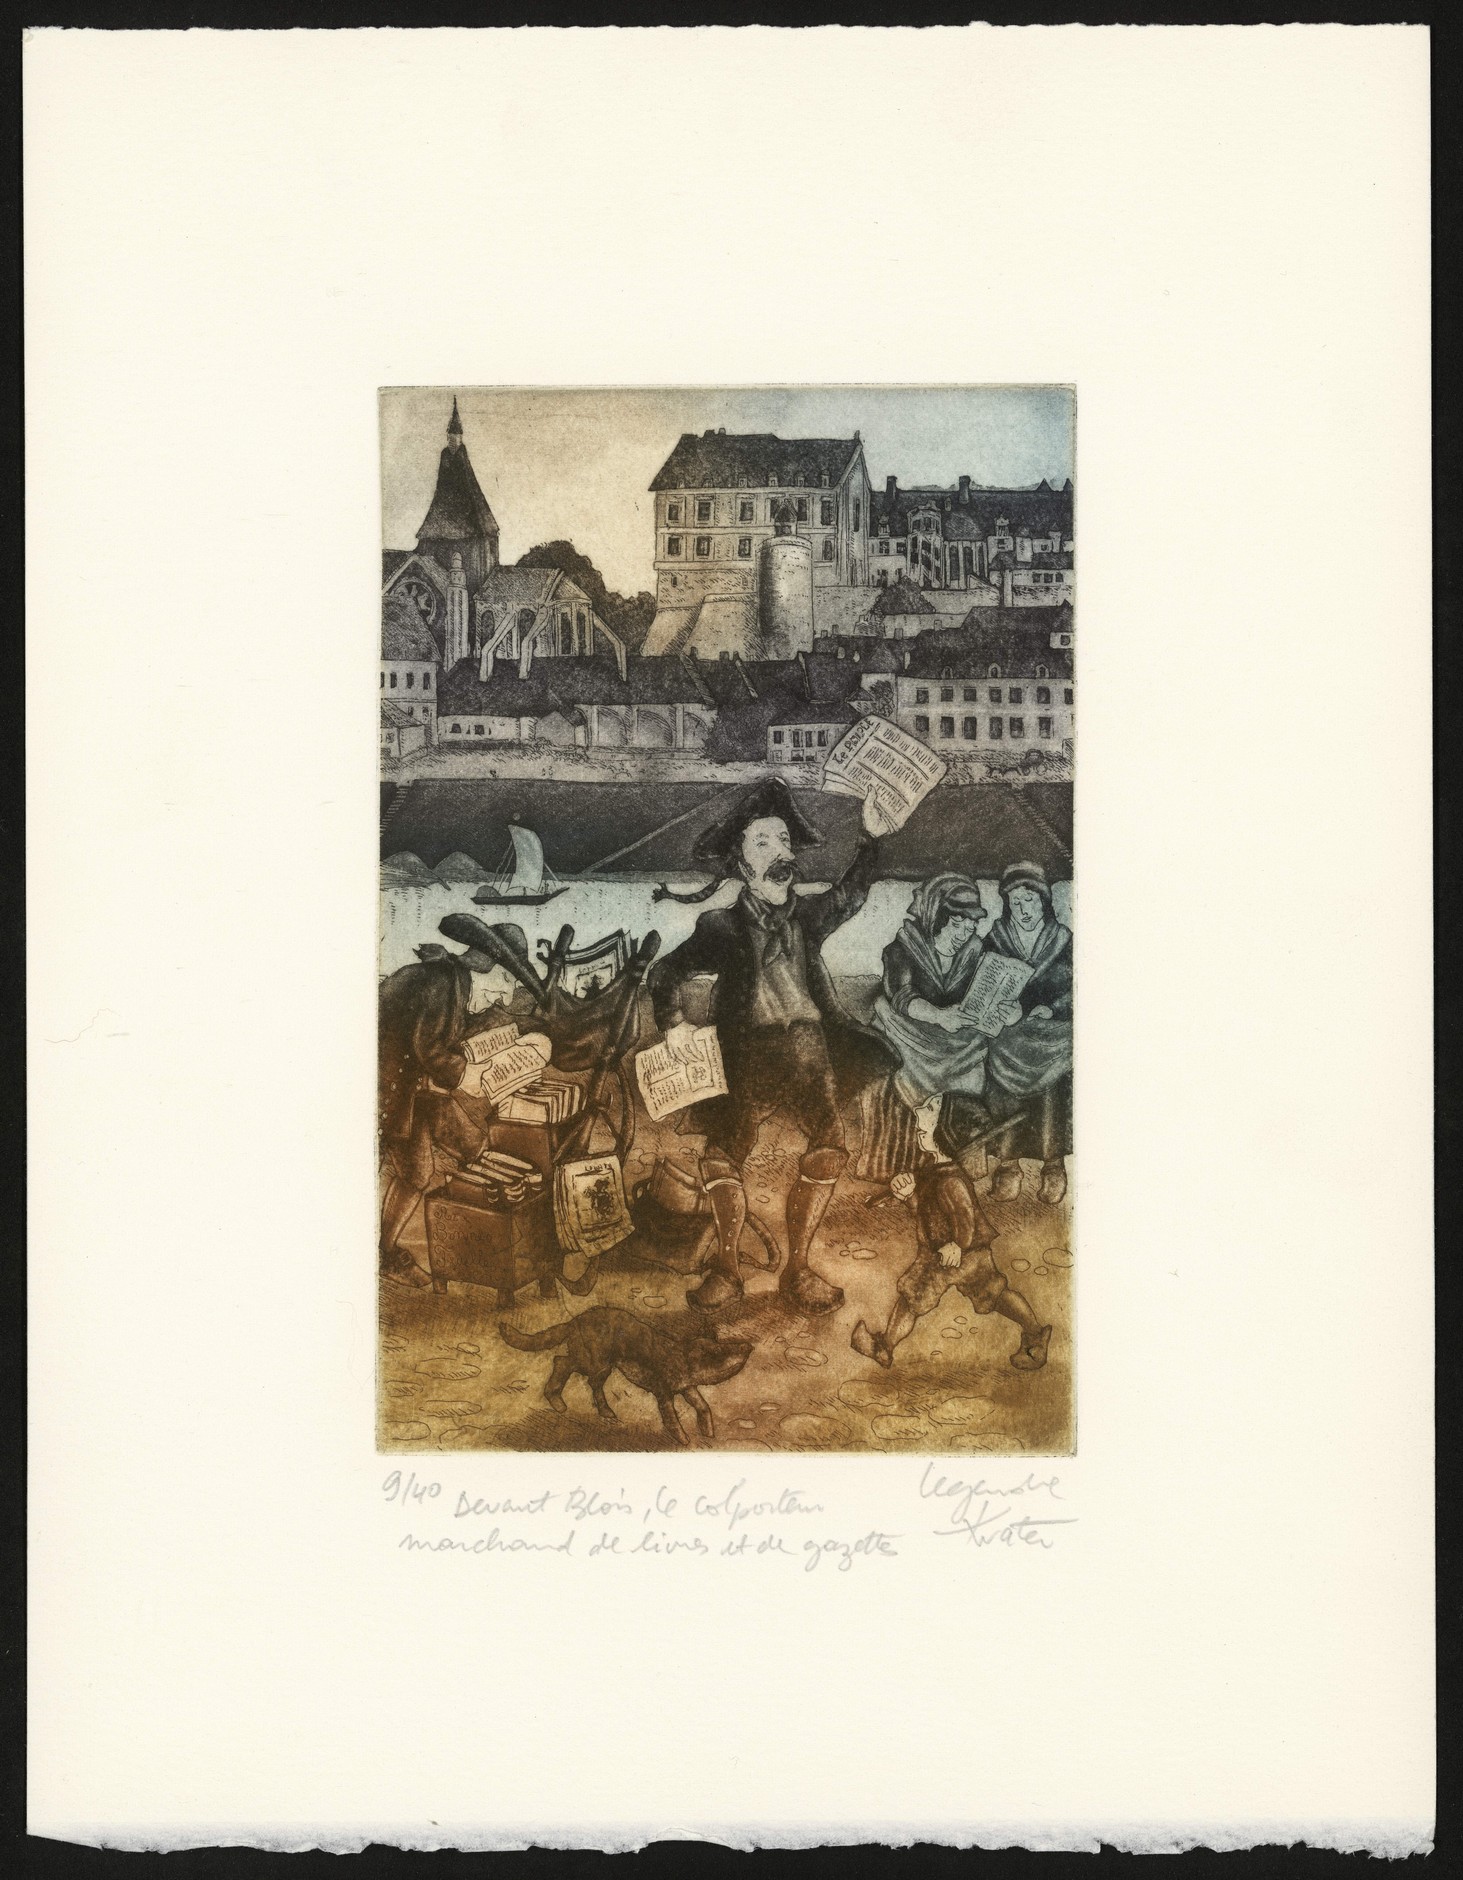 Philippe Legendre-Kvater, Devant Blois, le colporteur marchand de livres et de gazettes, gravure sur cuivre en couleurs, 1984